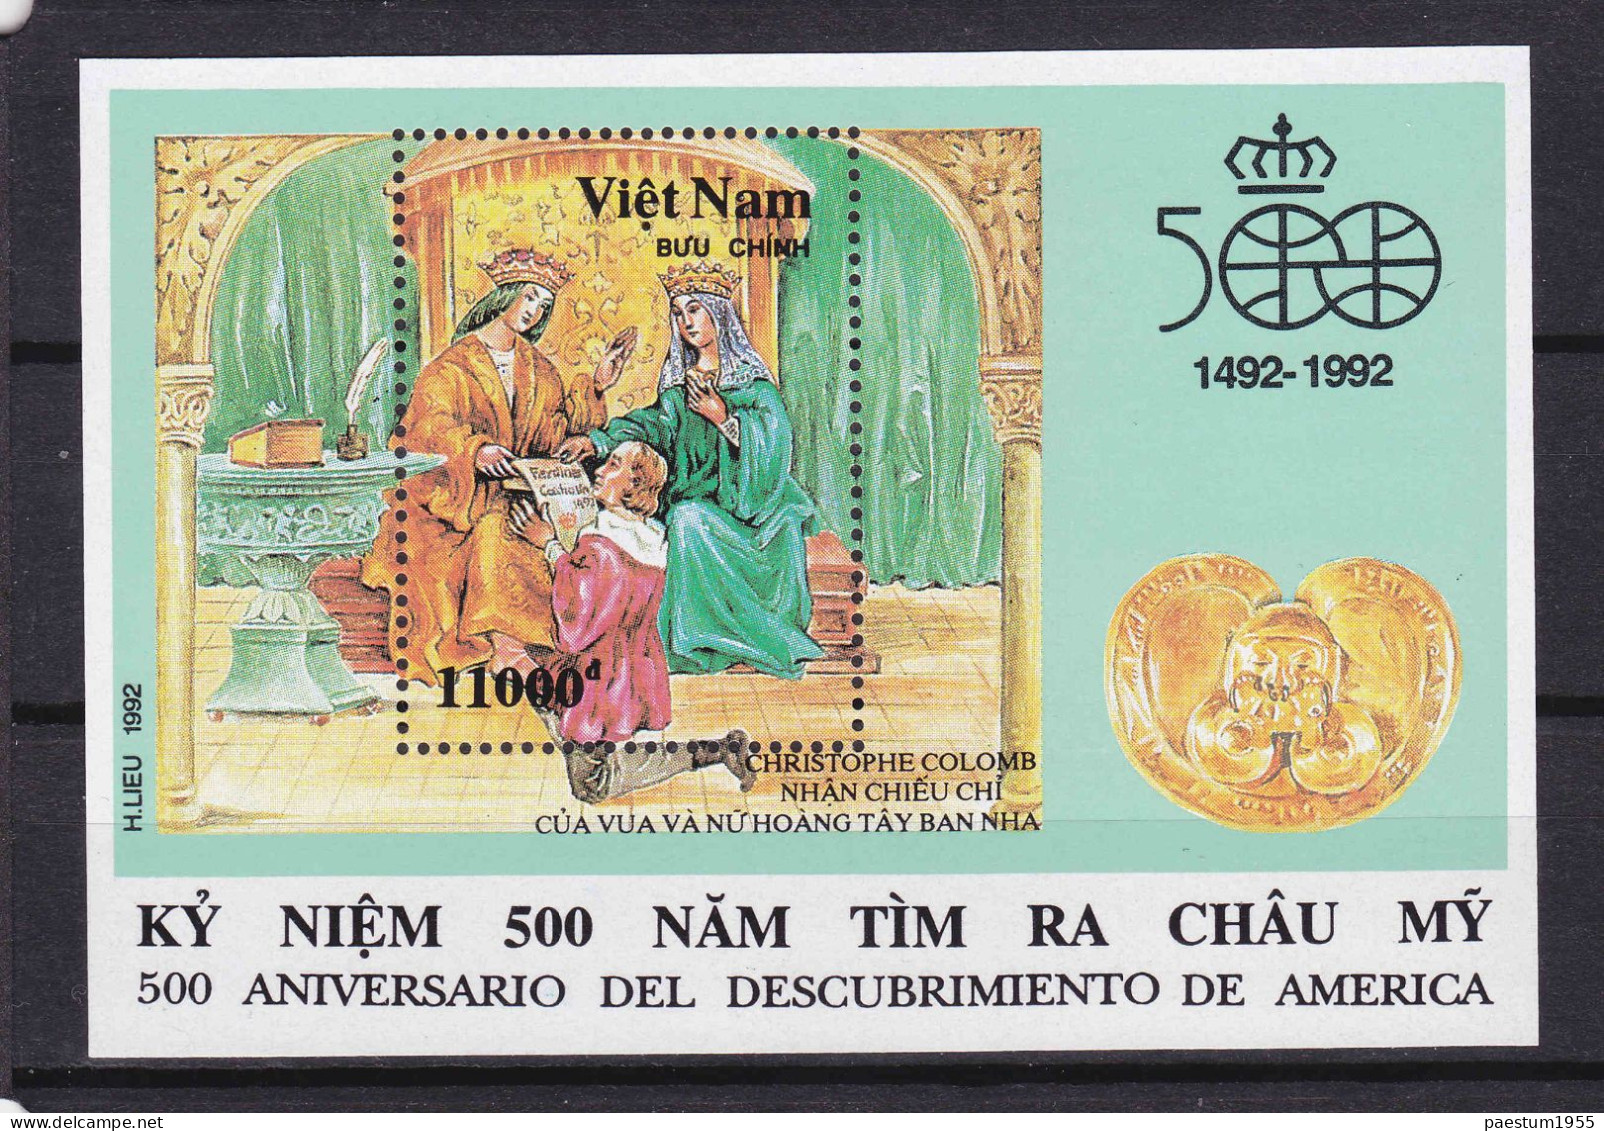 Feuillet Neuf** MNH 1992 Viêt-Nam Vietnam 1442-1992 Découverte De L'Amérique Par Christophe Colomb Mi:VN BL95, YT: VN 71 - Vietnam